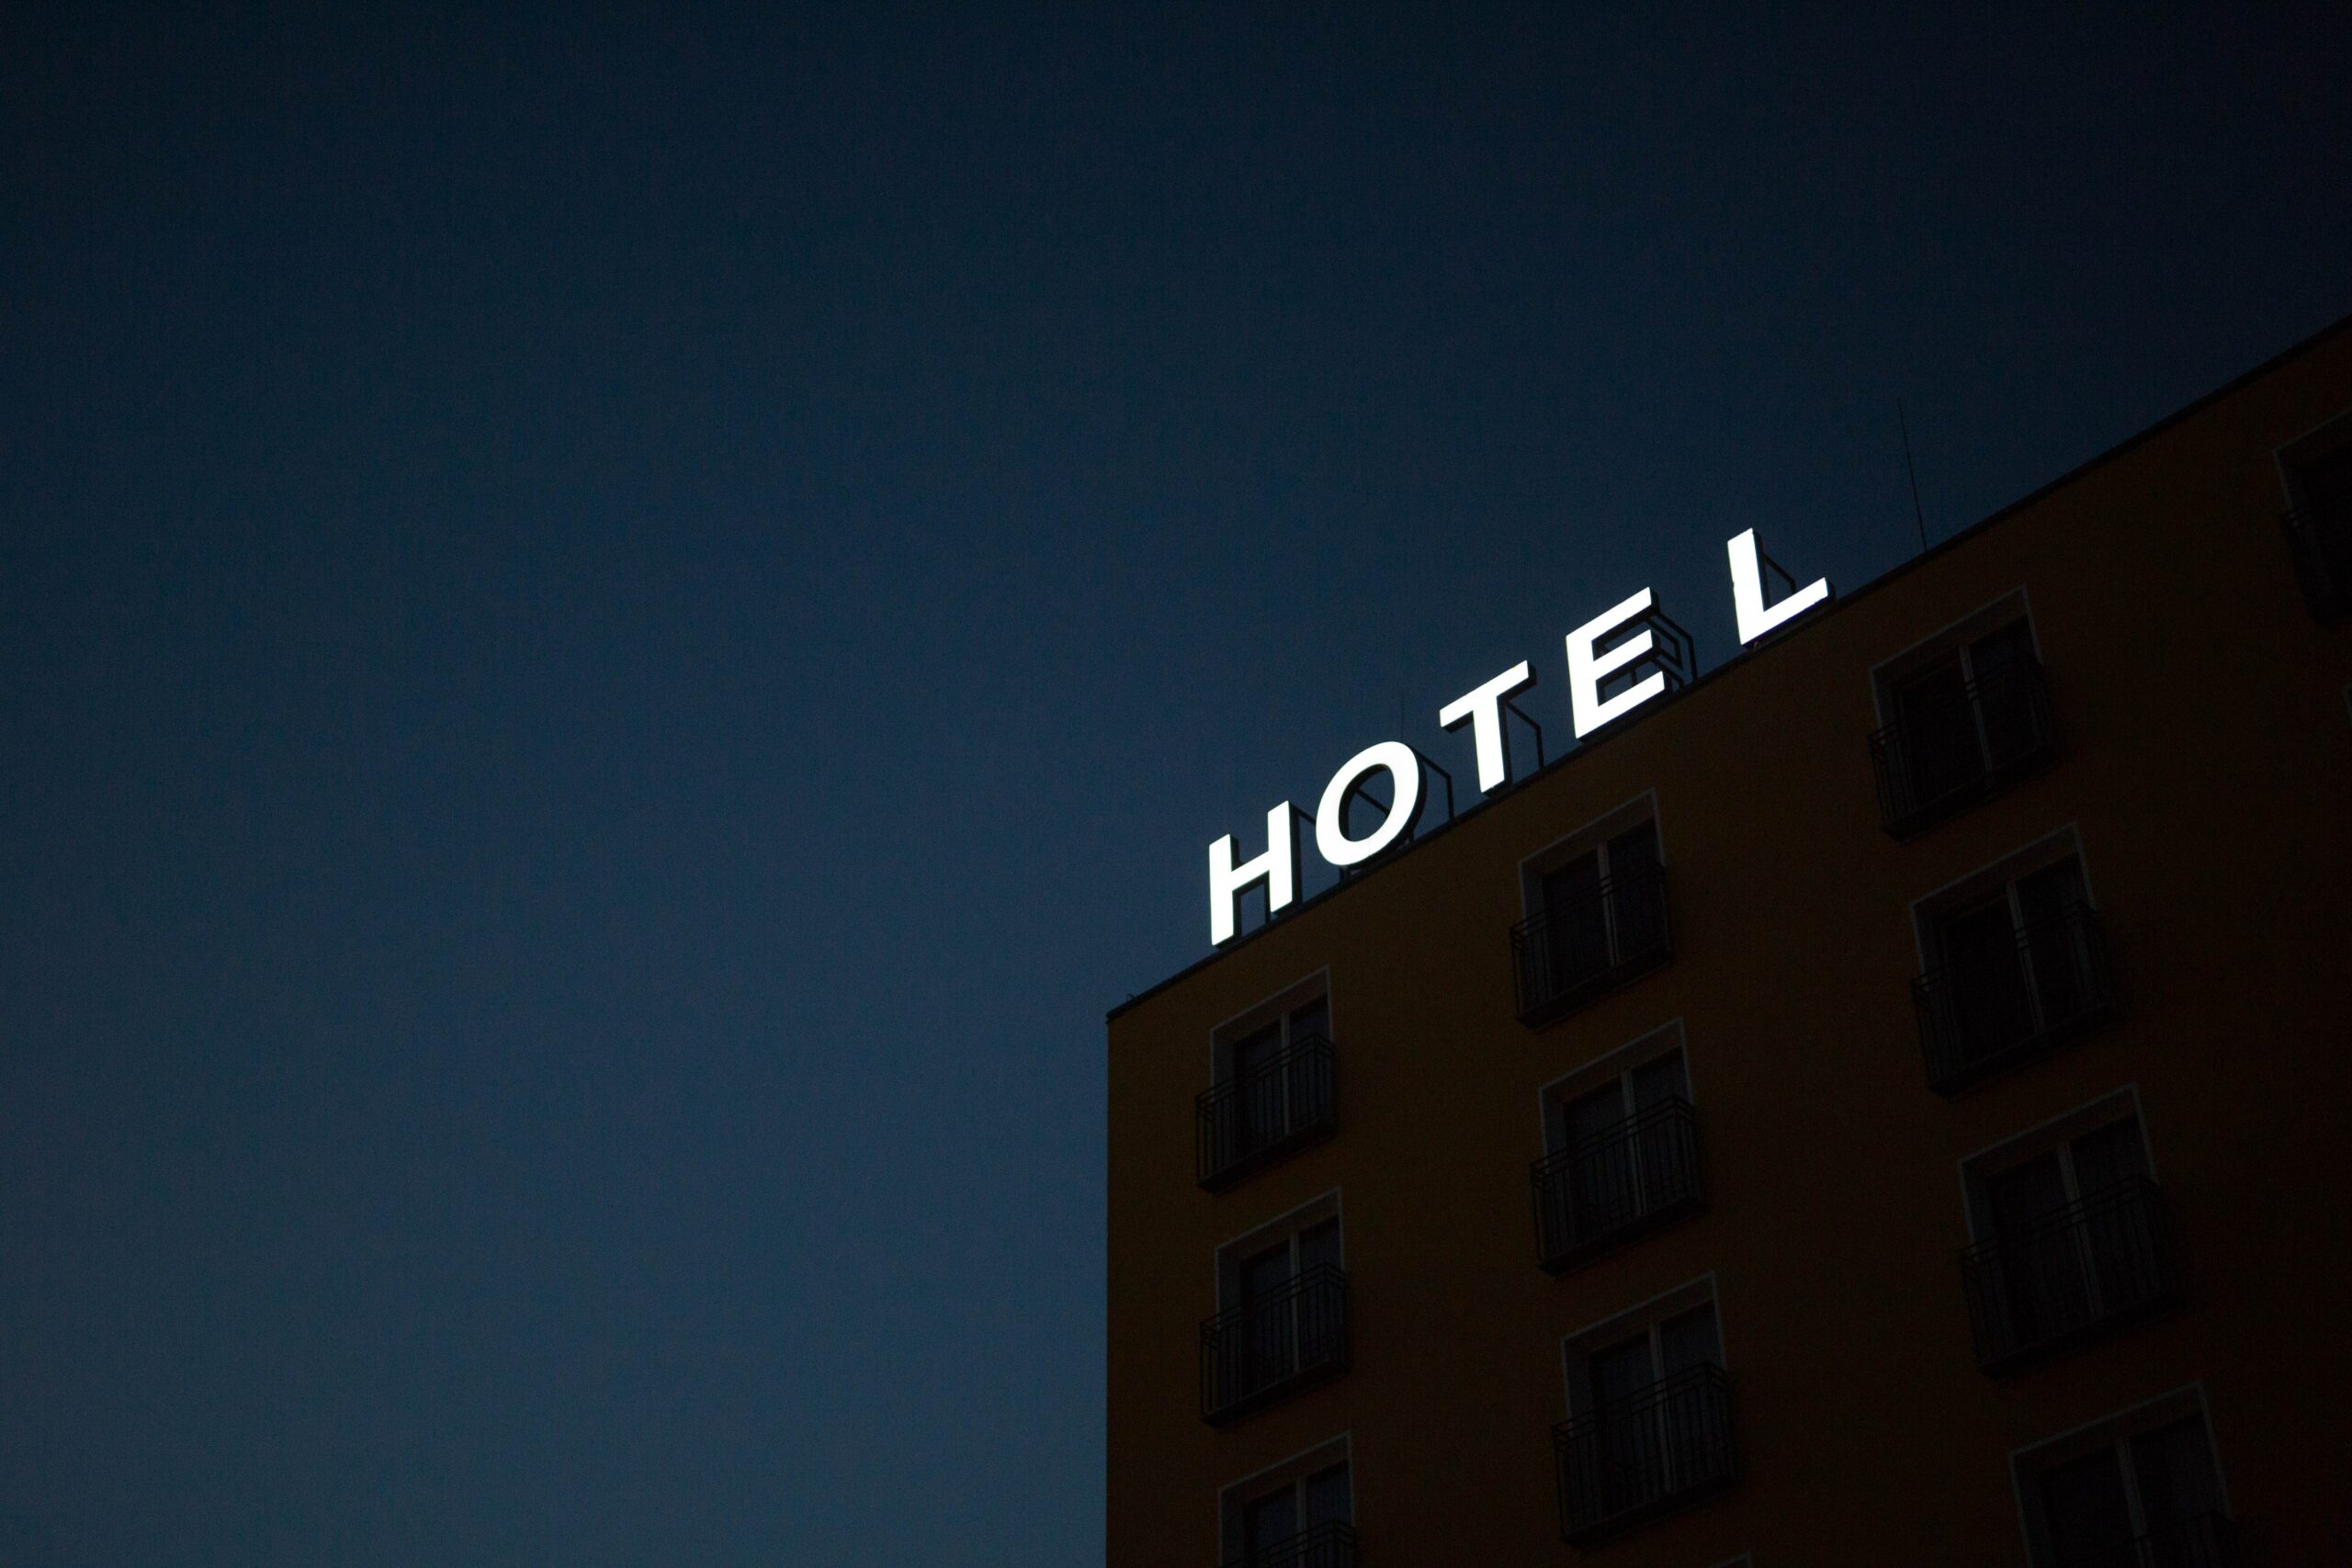 Symbolisch foto can een hotelreklame